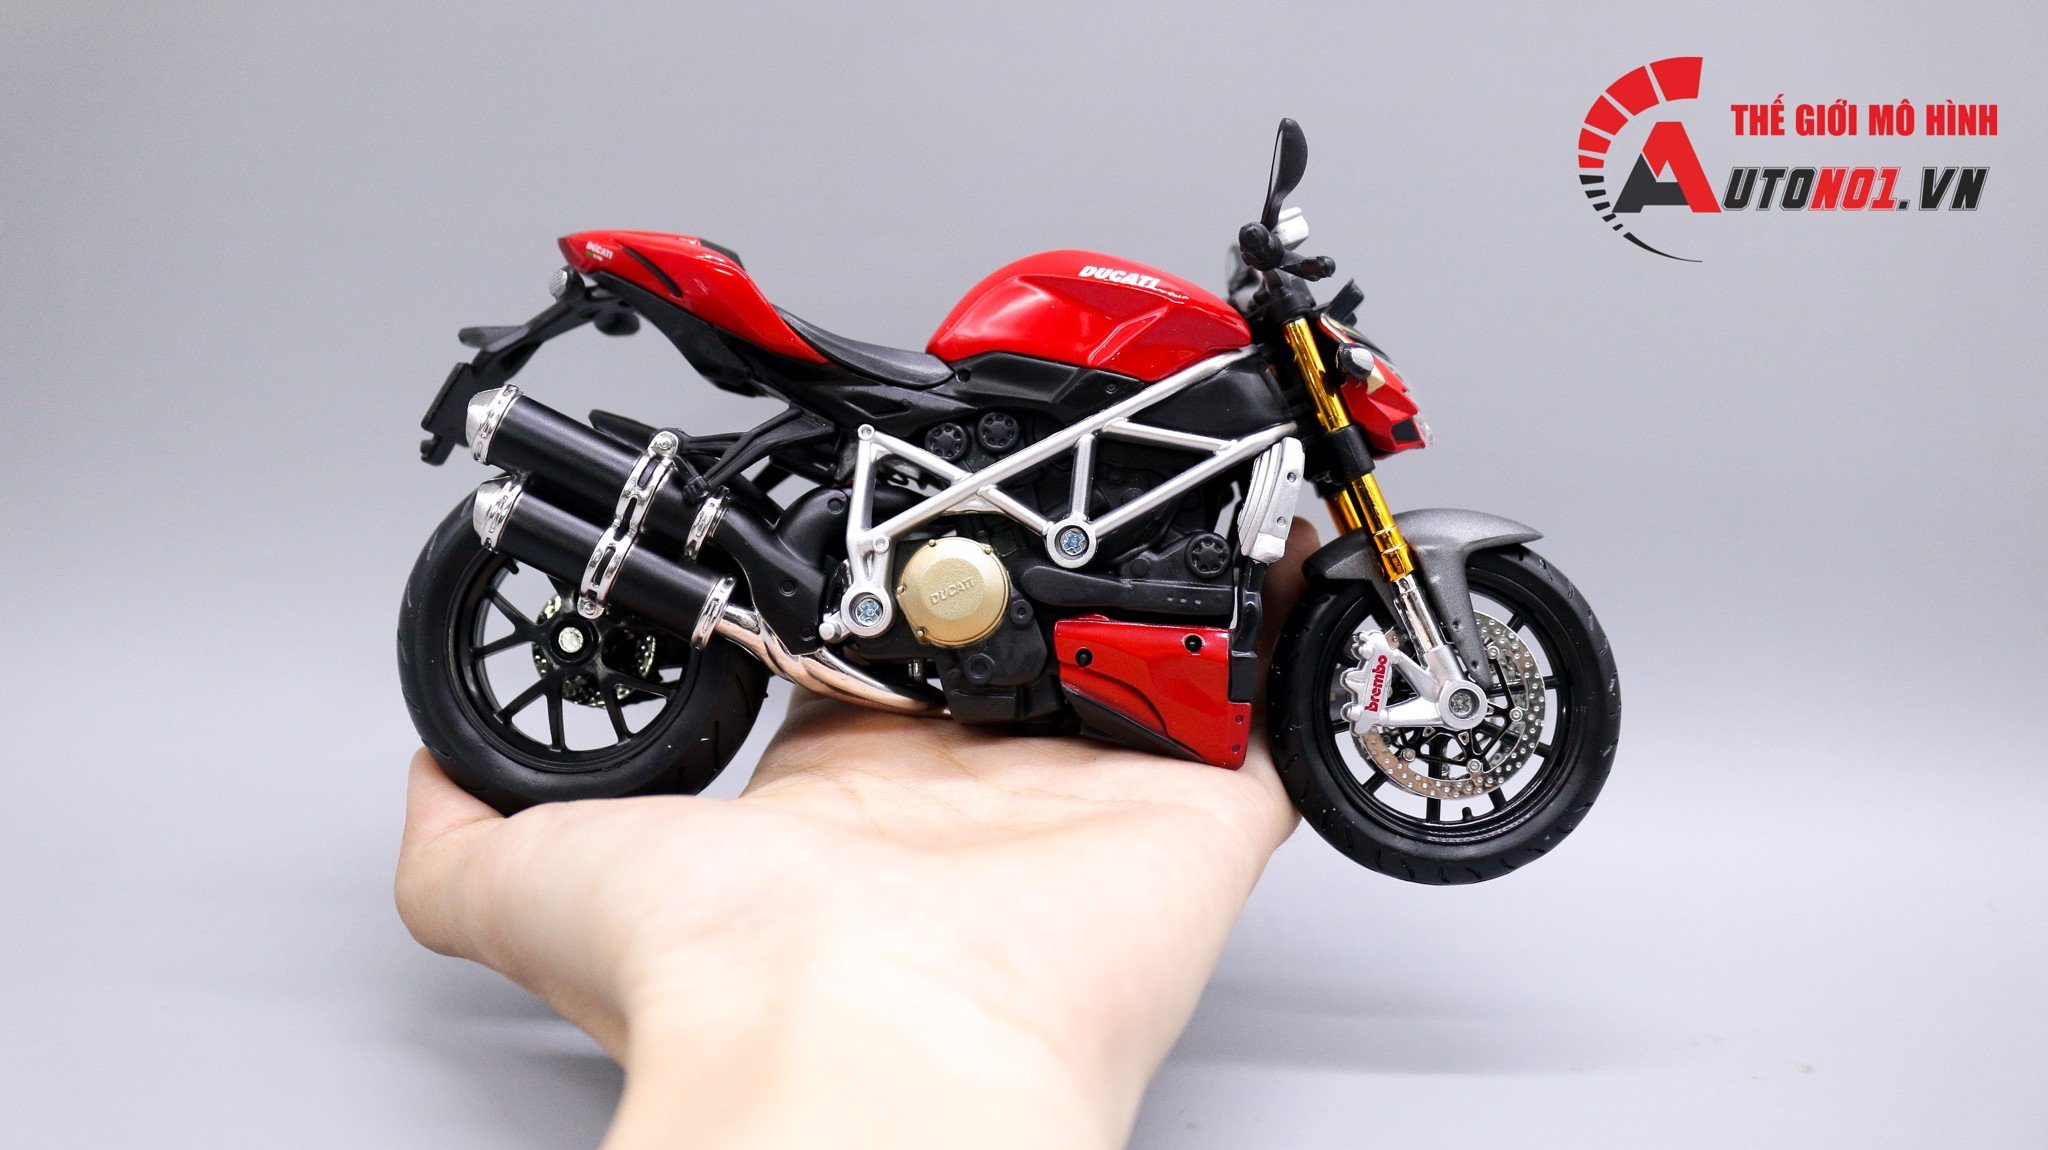  Mô hình xe Ducati Streetfighter S red 1:12 Maisto 4522 không đế 